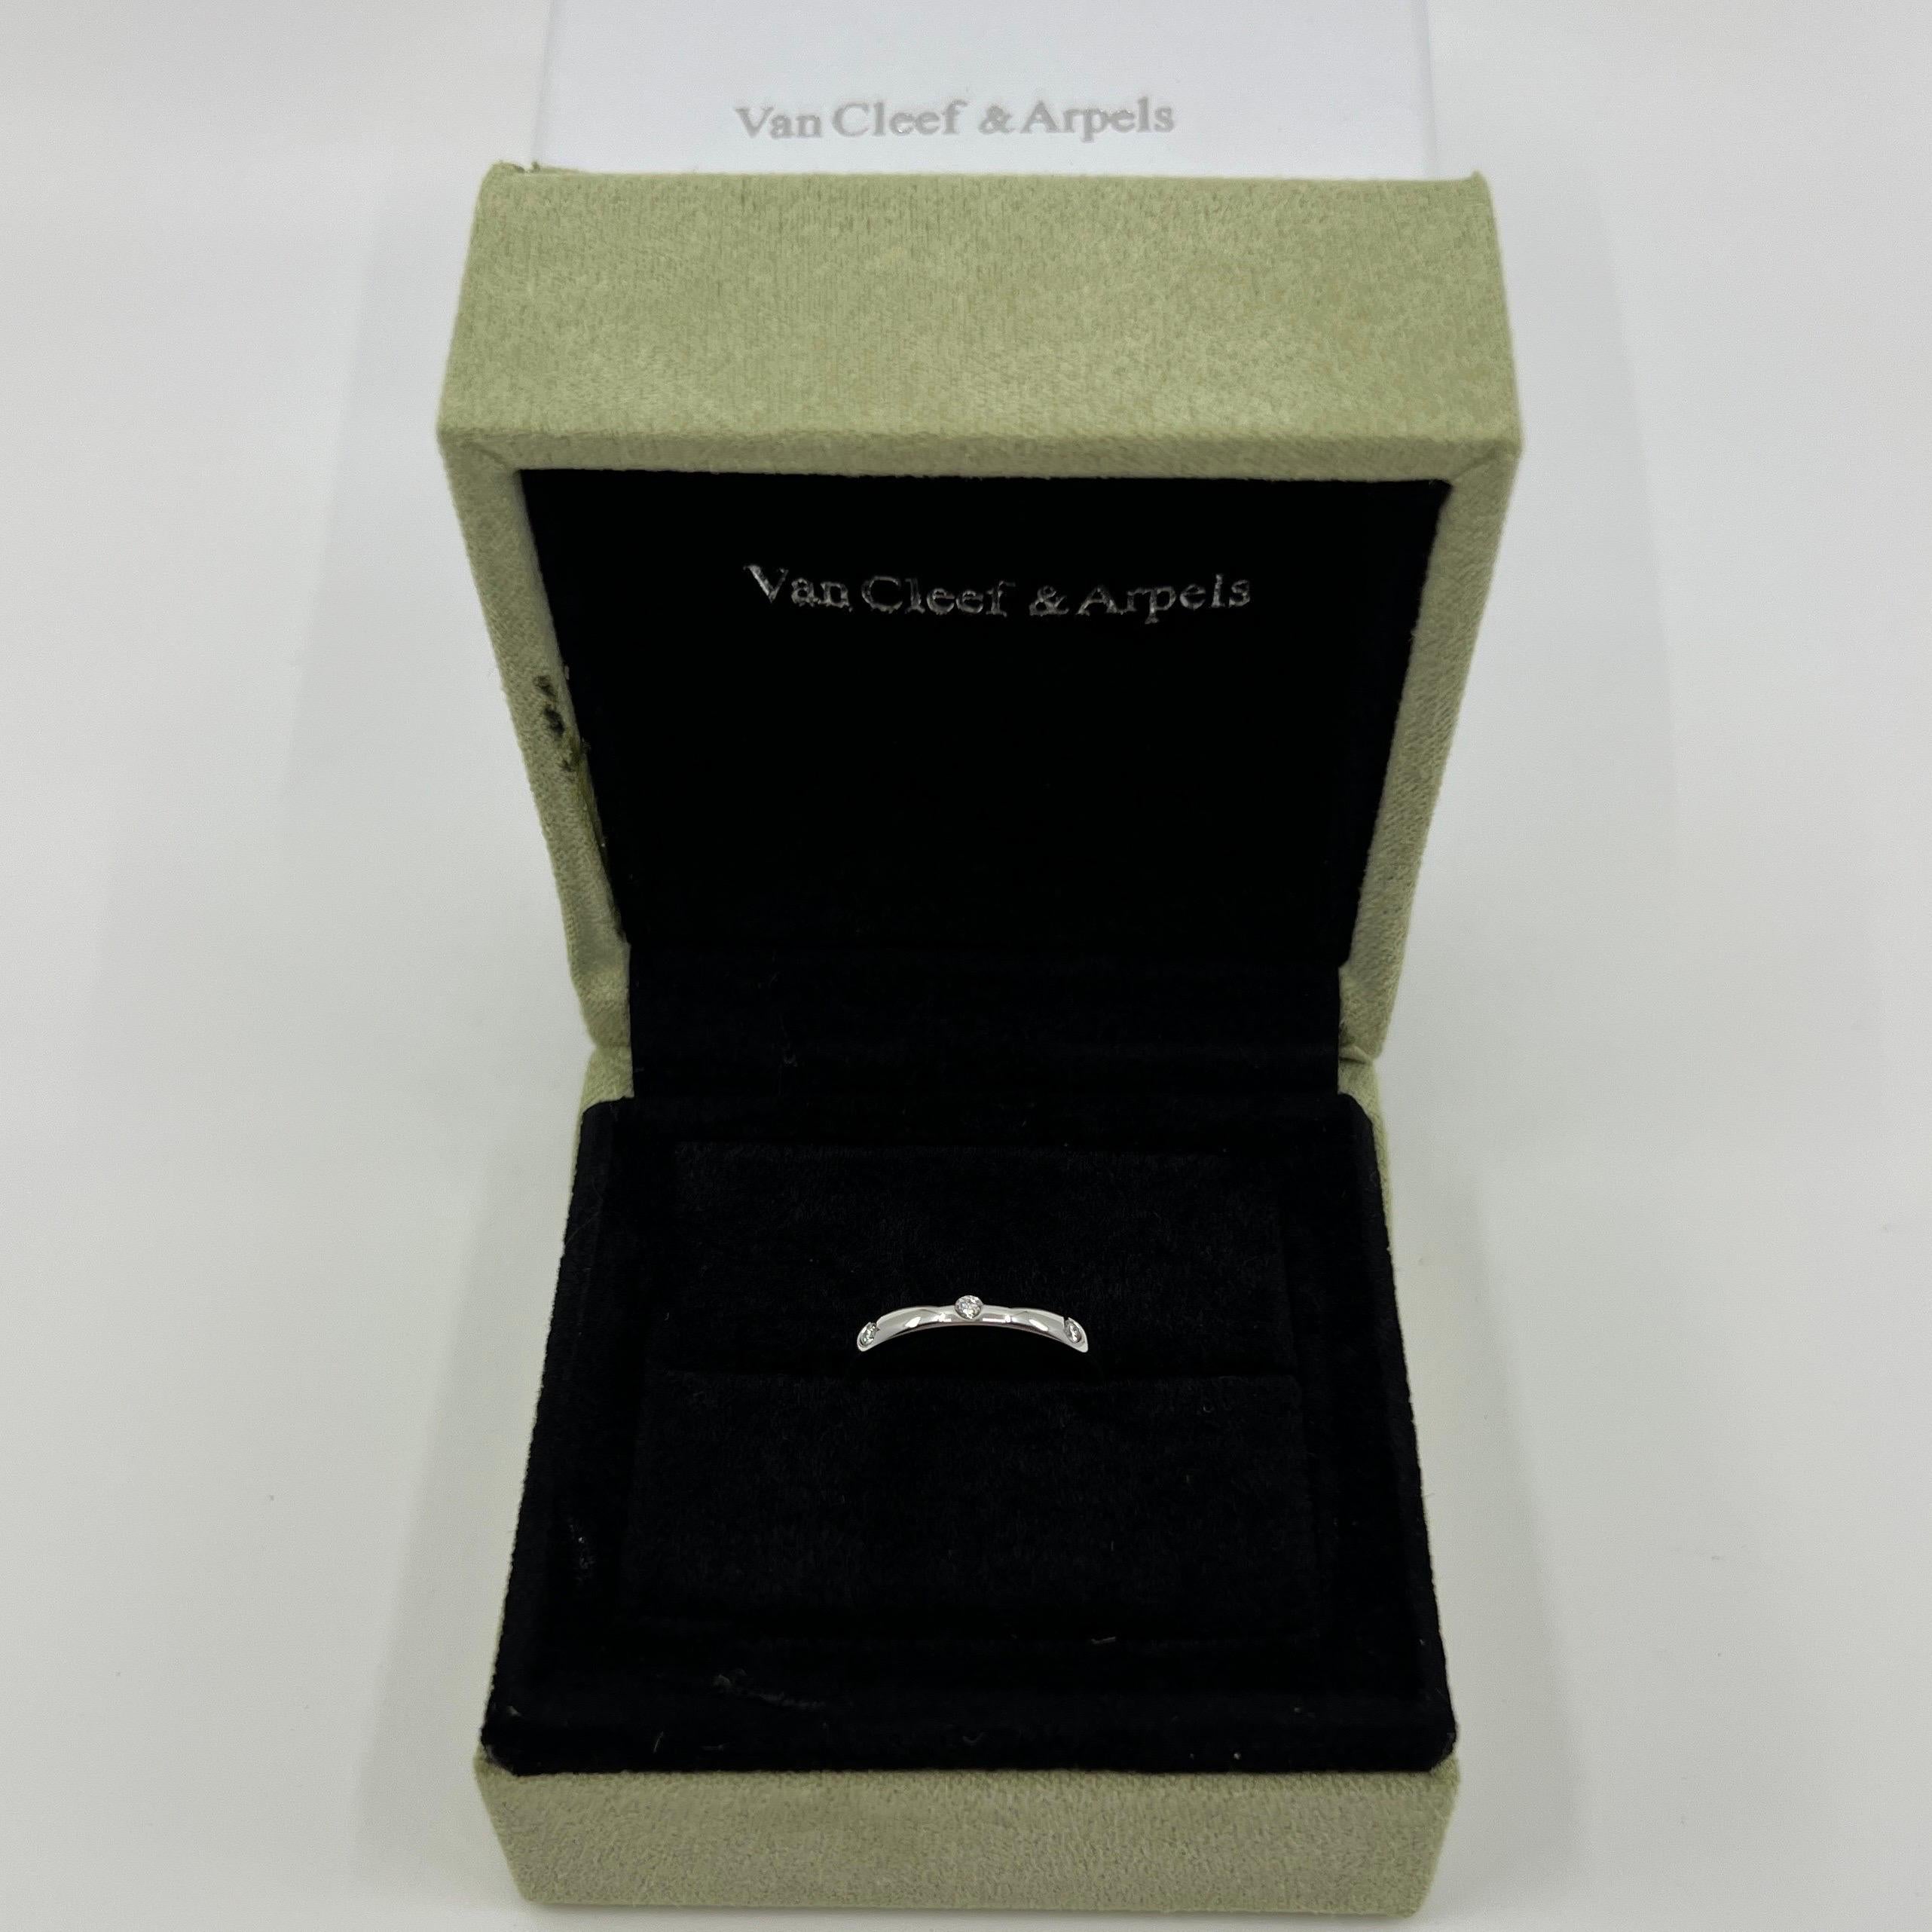 Van Cleef & Arpels Platin-Diamantband-Ring.

Ein klassischer Bandring aus der VCA Etoile Collection. Mit drei bündig gefassten 1,8 mm großen weißen Naturdiamanten im Rundschliff besetzt.
Edle Juweliere wie Van Cleef & Arpels verwenden für ihre